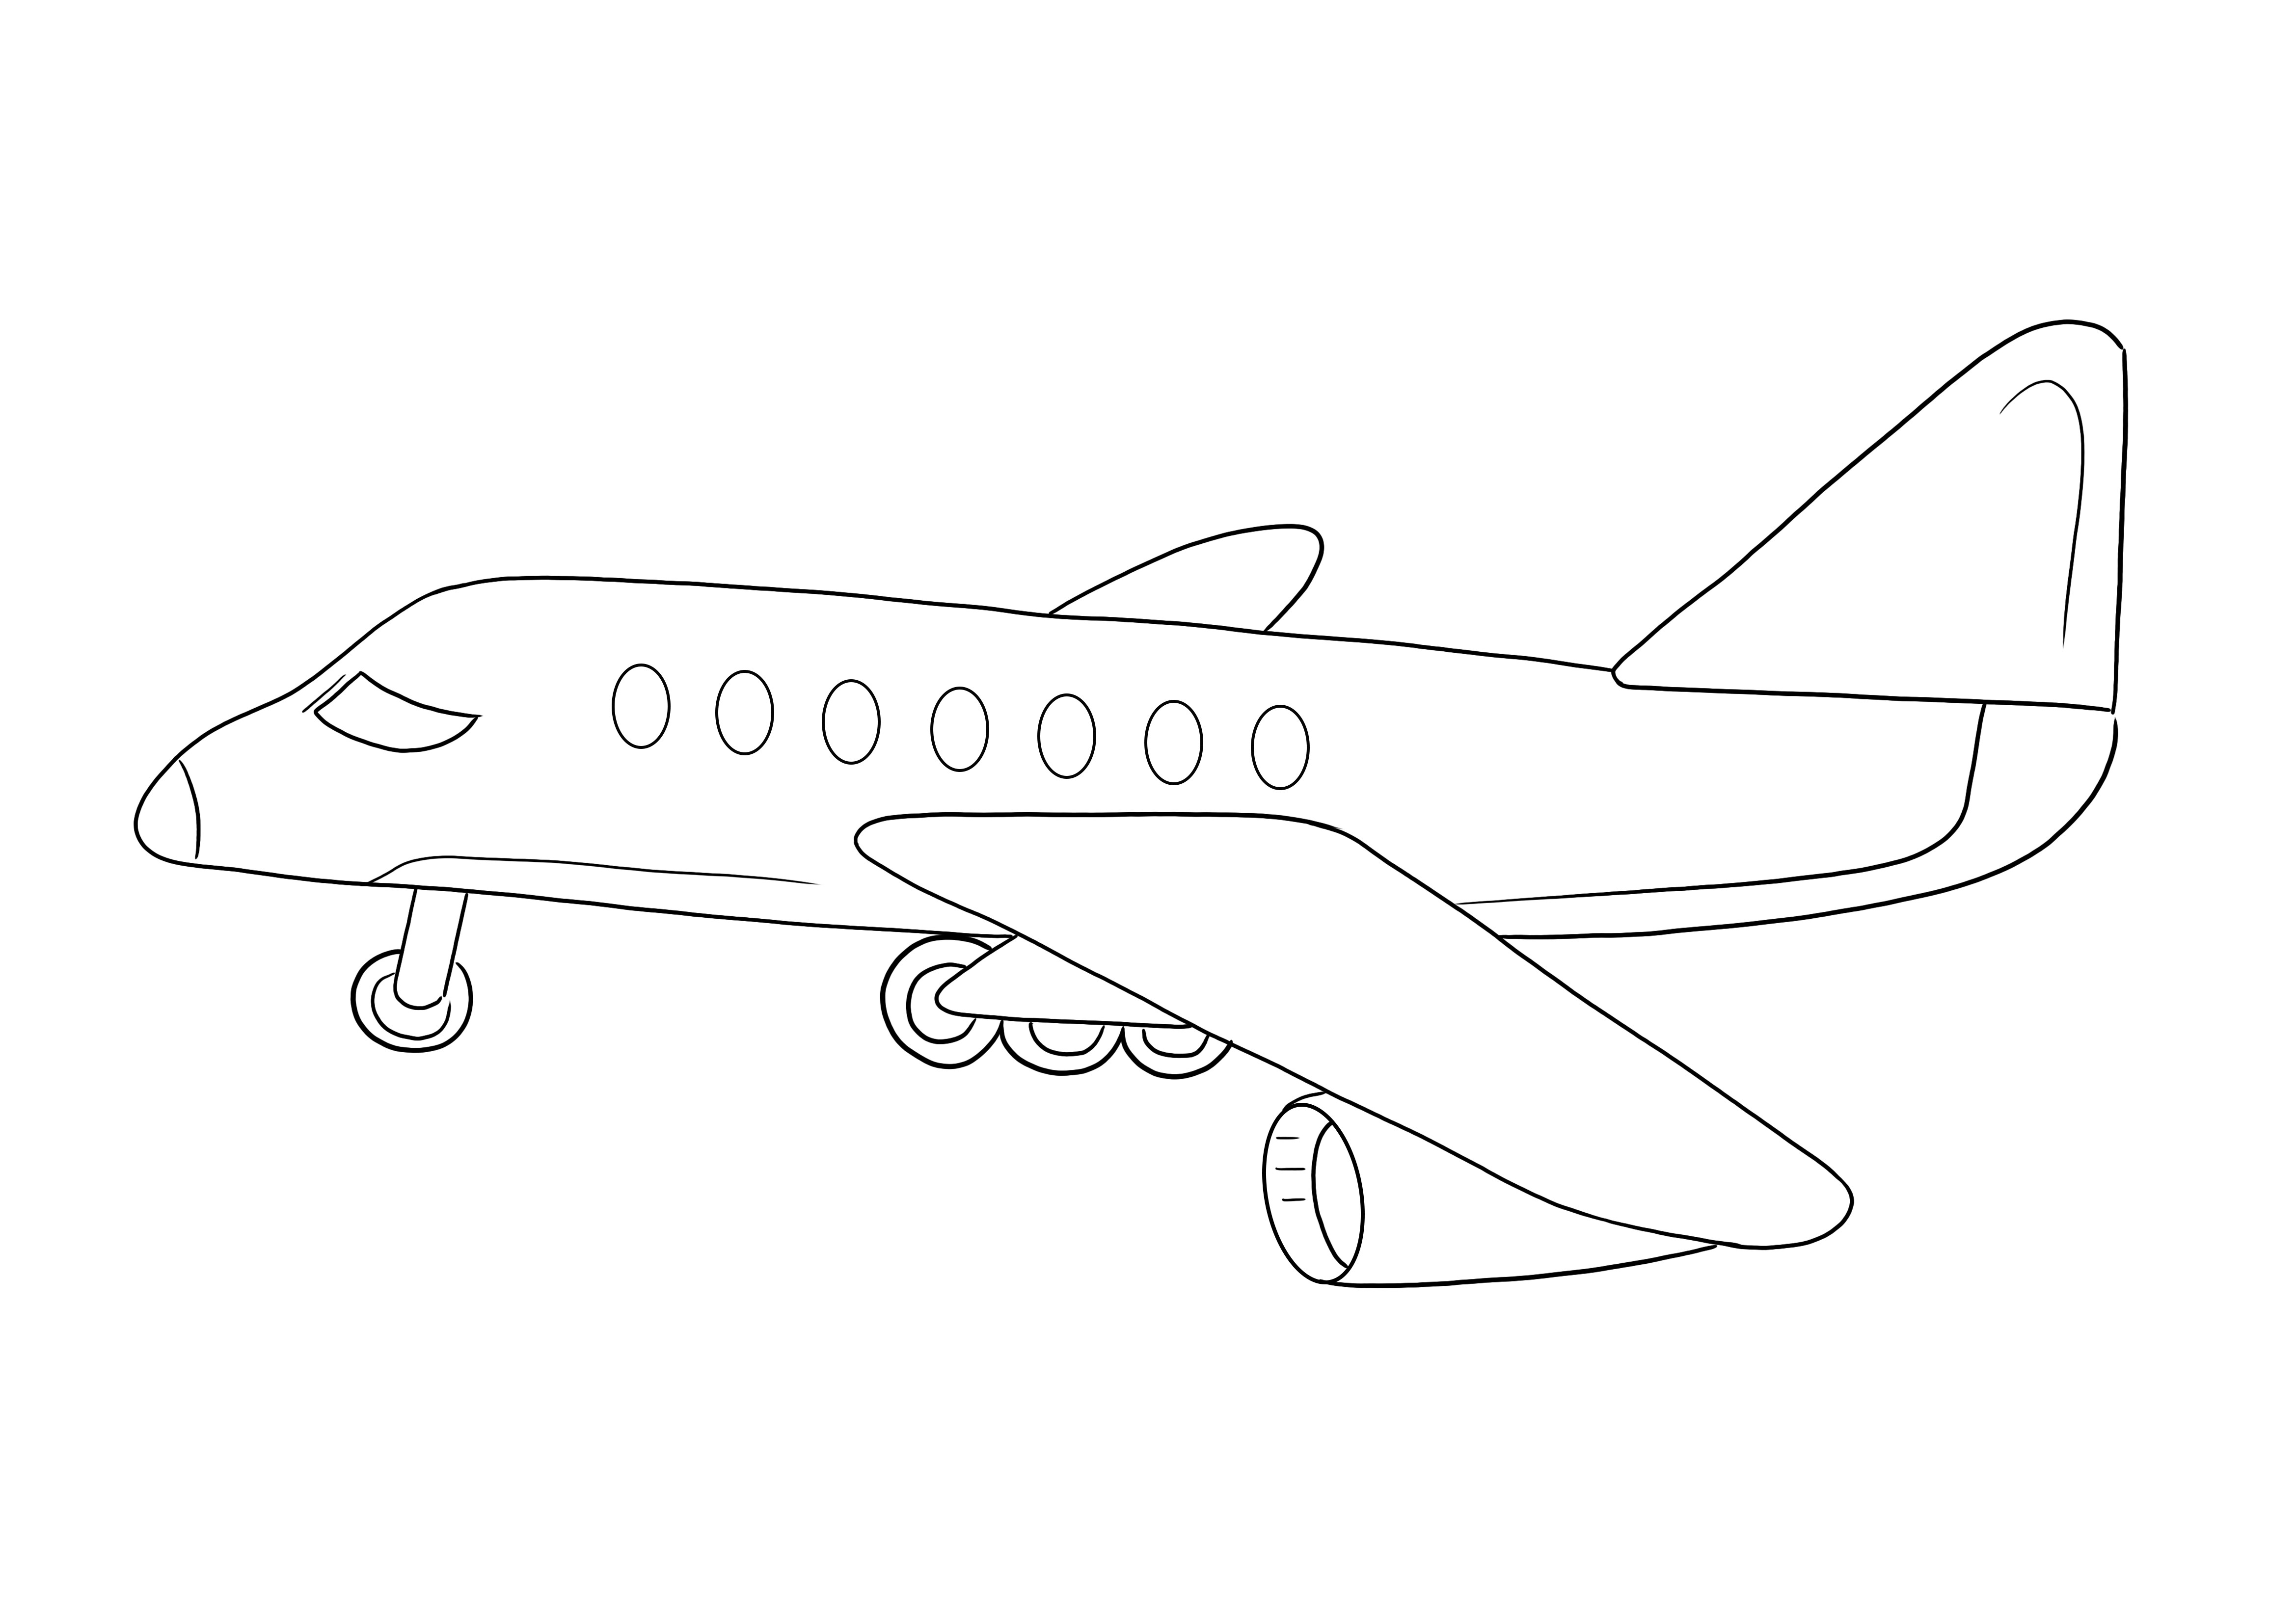 Ilmainen väritys lapsille lentokoneen saapumisesta tulostettavaksi tai tallennettavaksi myöhempää käyttöä varten